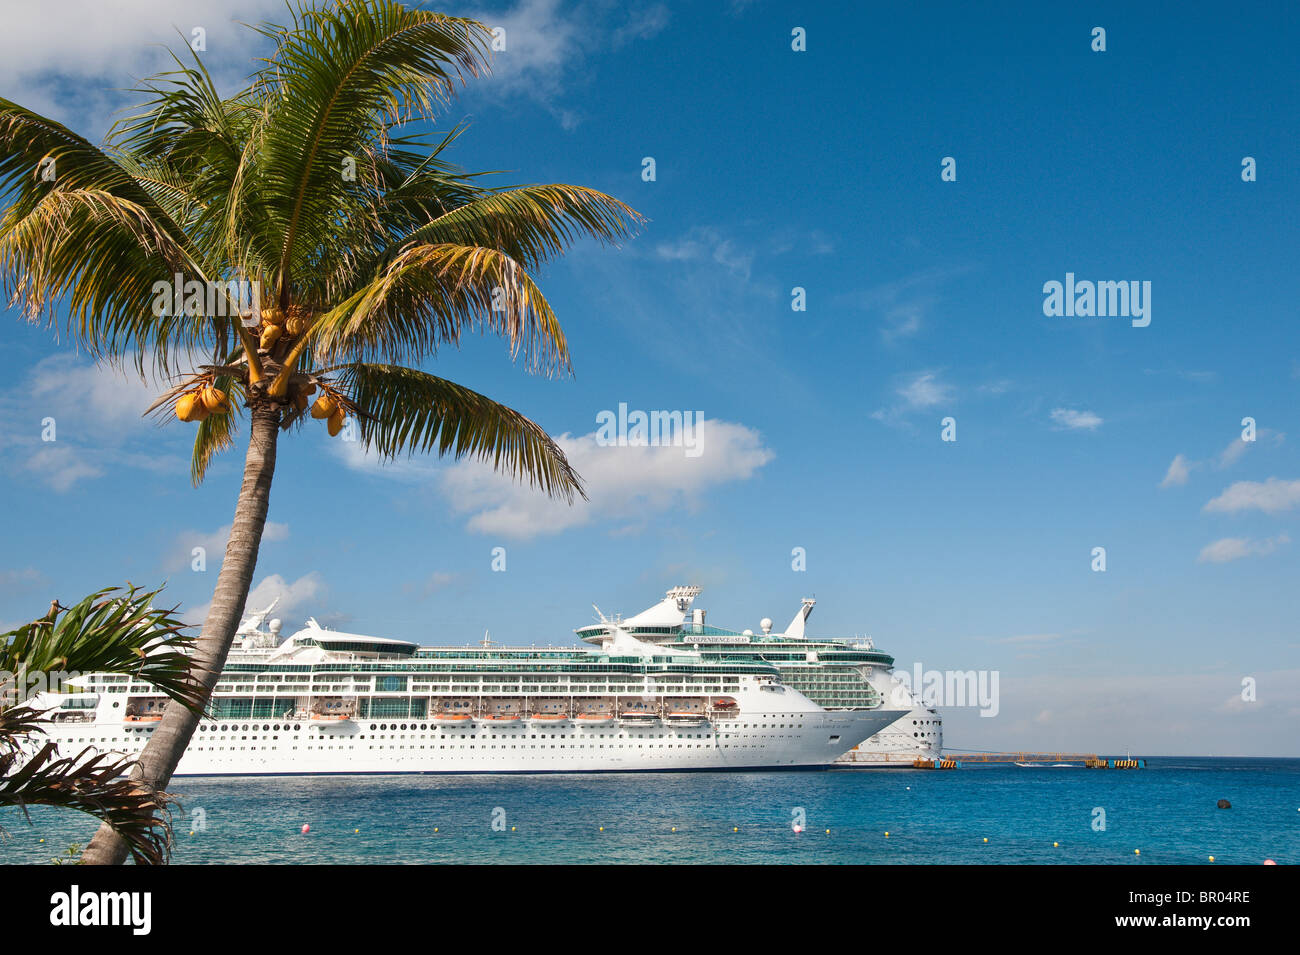 Mexico, Cozumel. Cruise ship, San Miguel, Isla Cozumel, Cozumel Island. Stock Photo